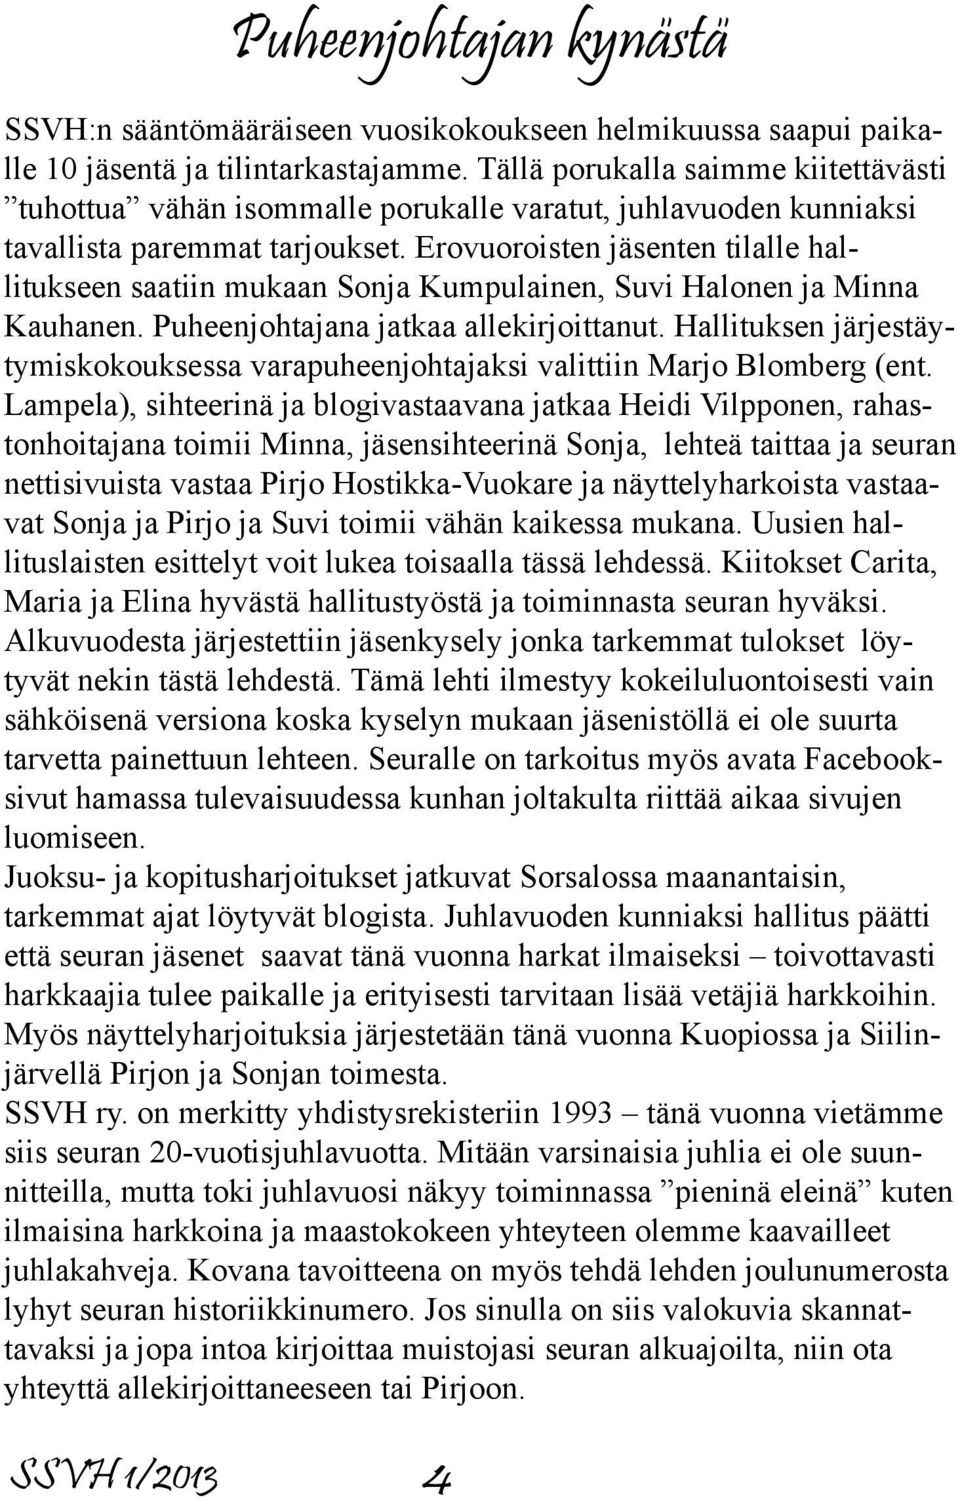 Erovuoroisten jäsenten tilalle hallitukseen saatiin mukaan Sonja Kumpulainen, Suvi Halonen ja Minna Kauhanen. Puheenjohtajana jatkaa allekirjoittanut.